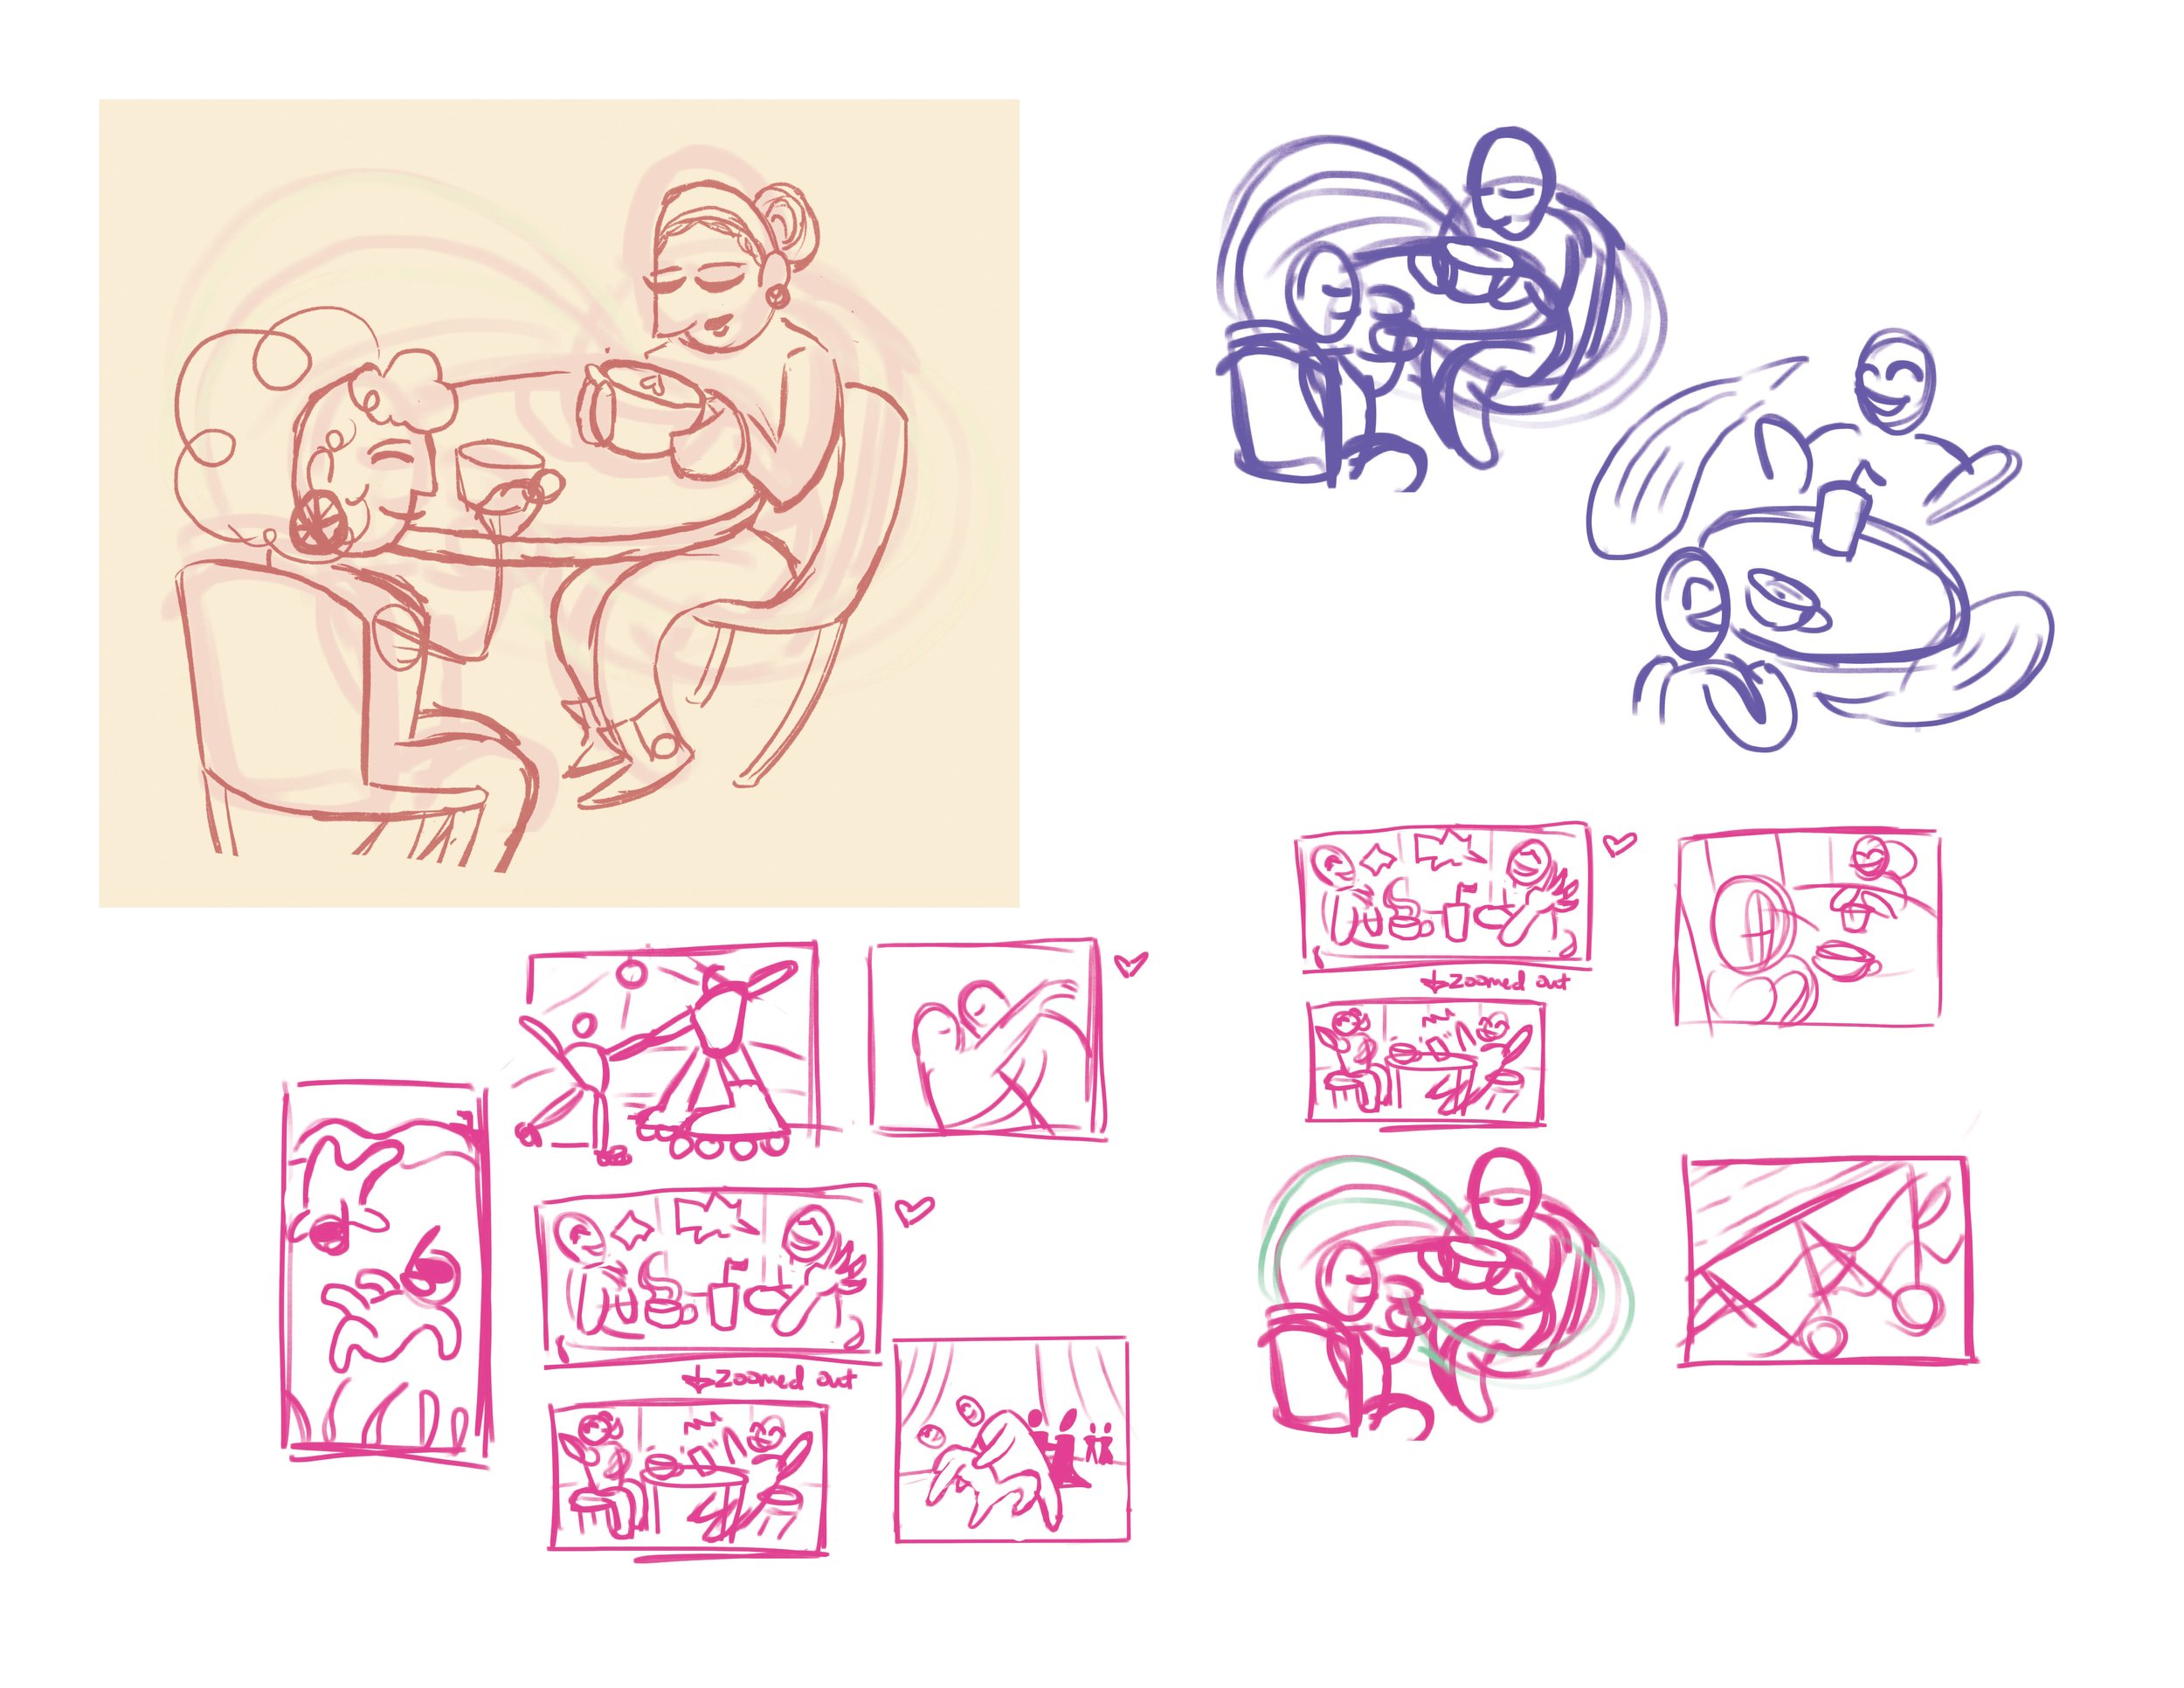  Cozy Conversation Illustration Thumbnails/Sketches